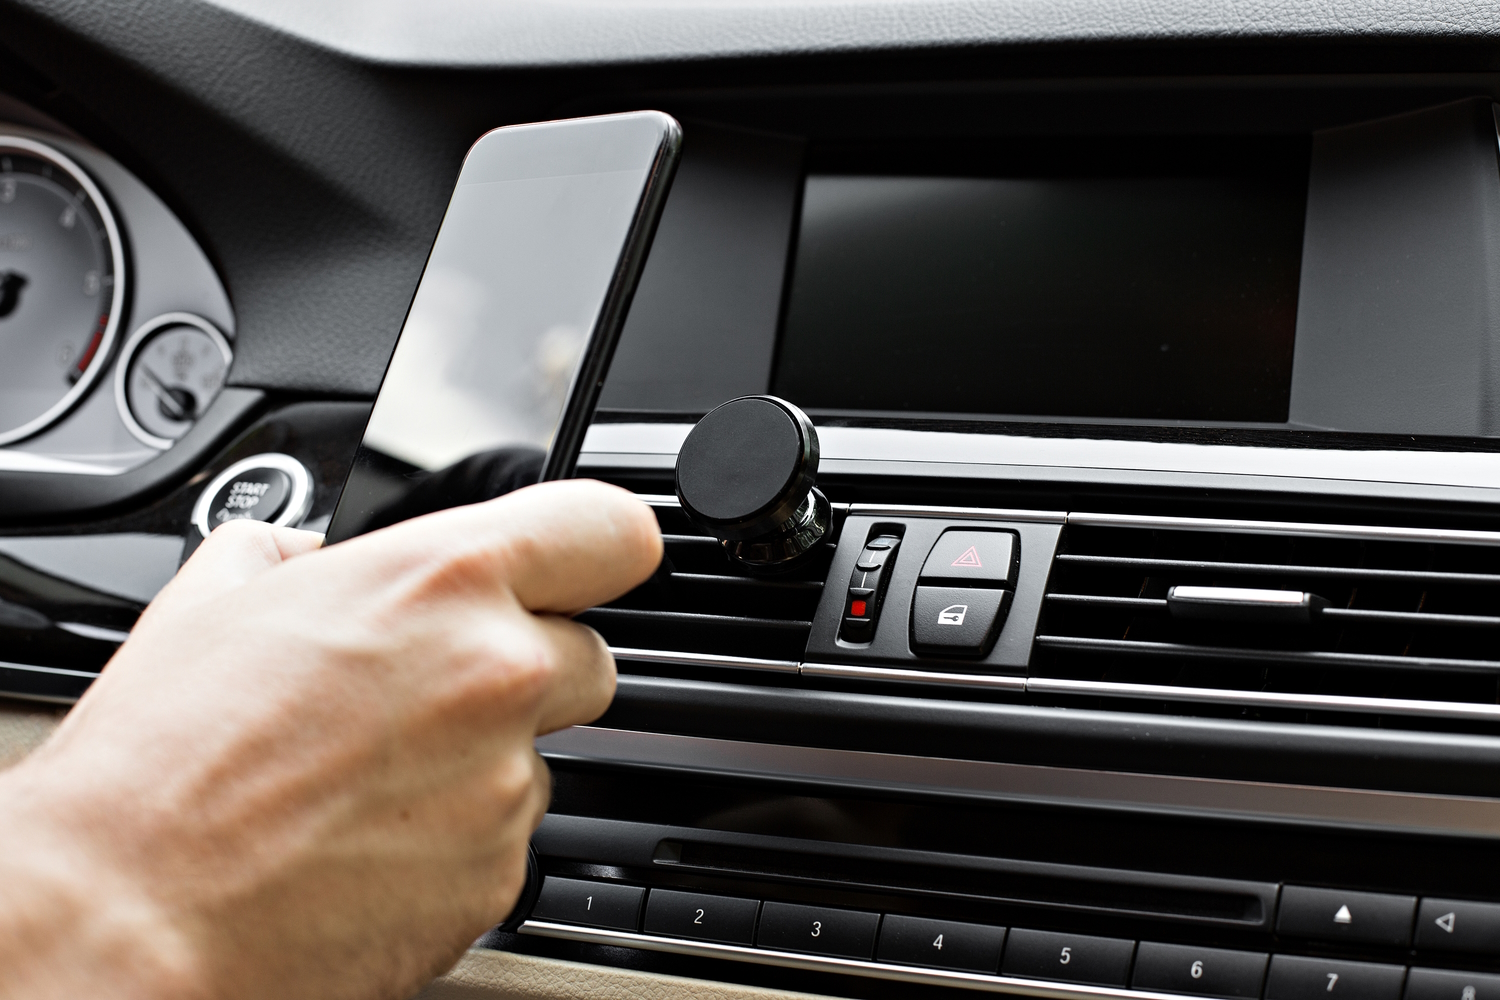 Persona poniendo un móvil en un soporte magnético situado en las rejillas de ventilación de un vehículo